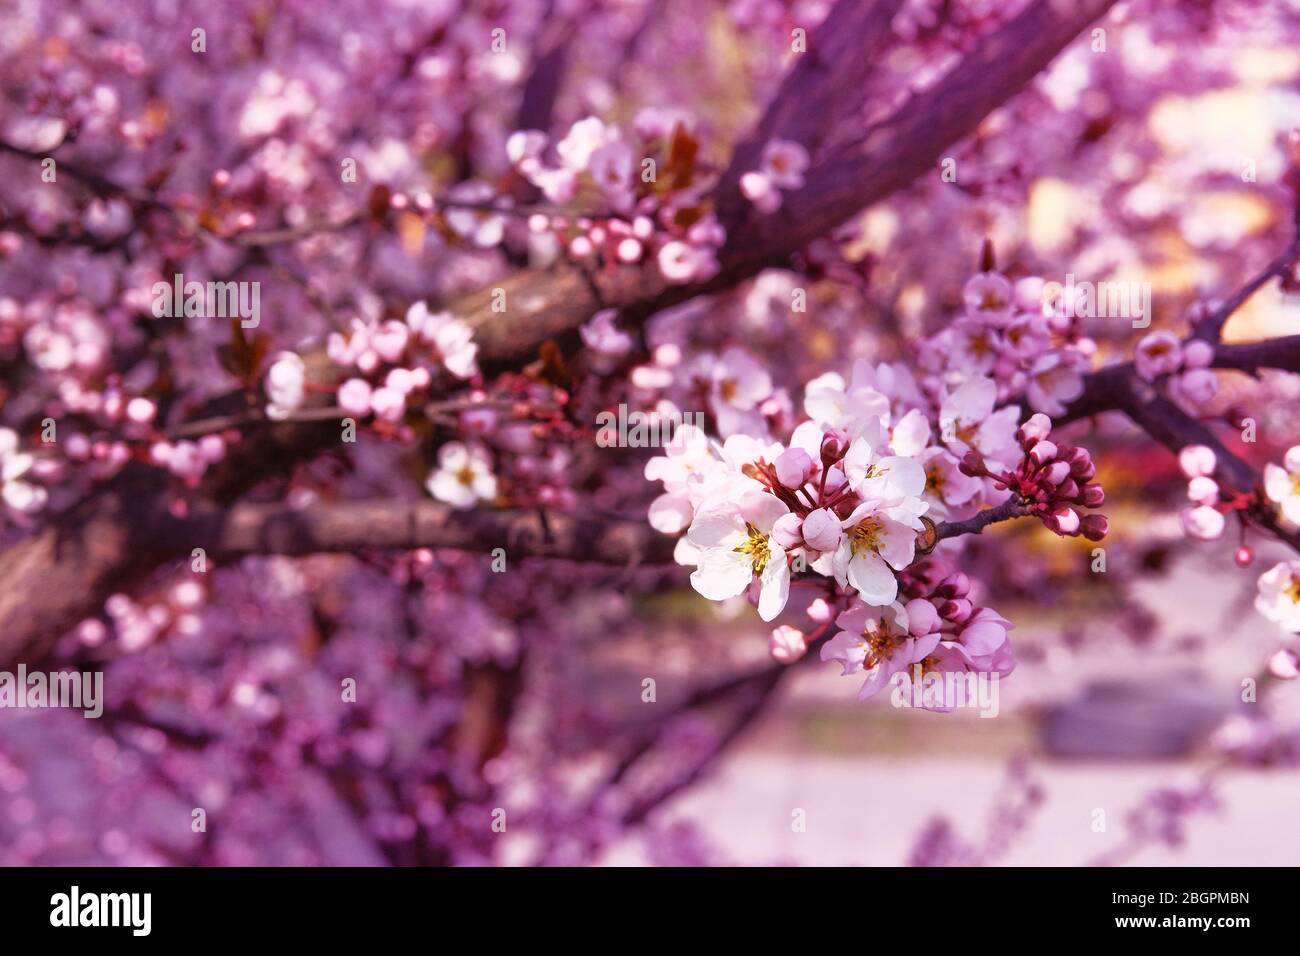 Fiori di albicocca fioriti con petali bianchi. Primavera sfondo sfocato della natura, colore rosa. Biglietto d'auguri per il giorno delle donne. Giardino giapponese fiorente. Foto Stock